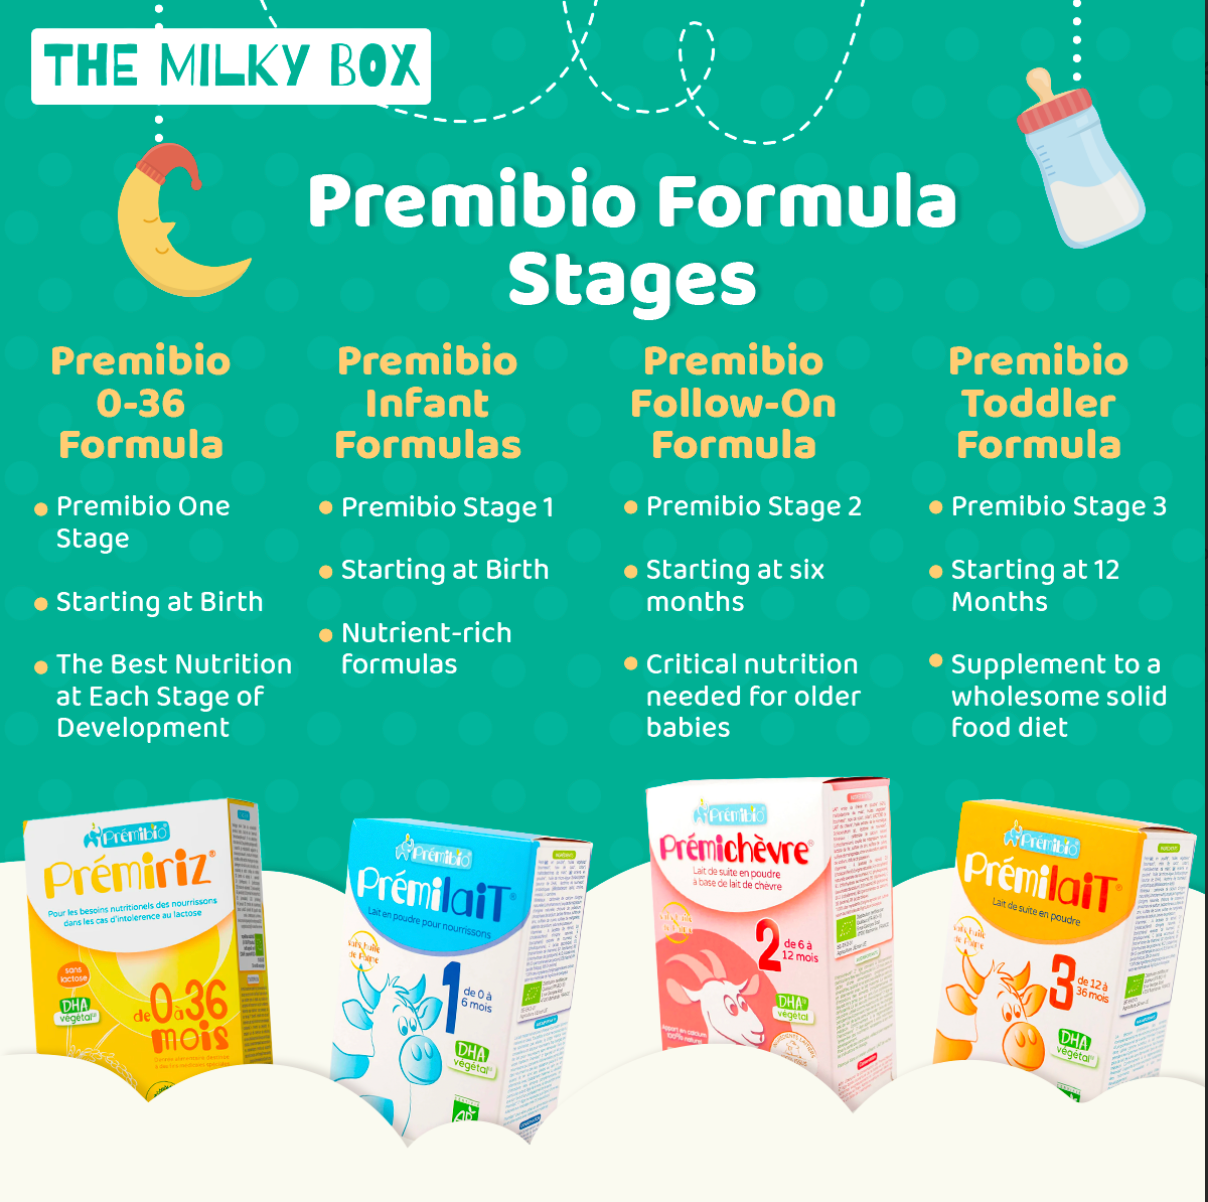 Prémibio Formulas stages